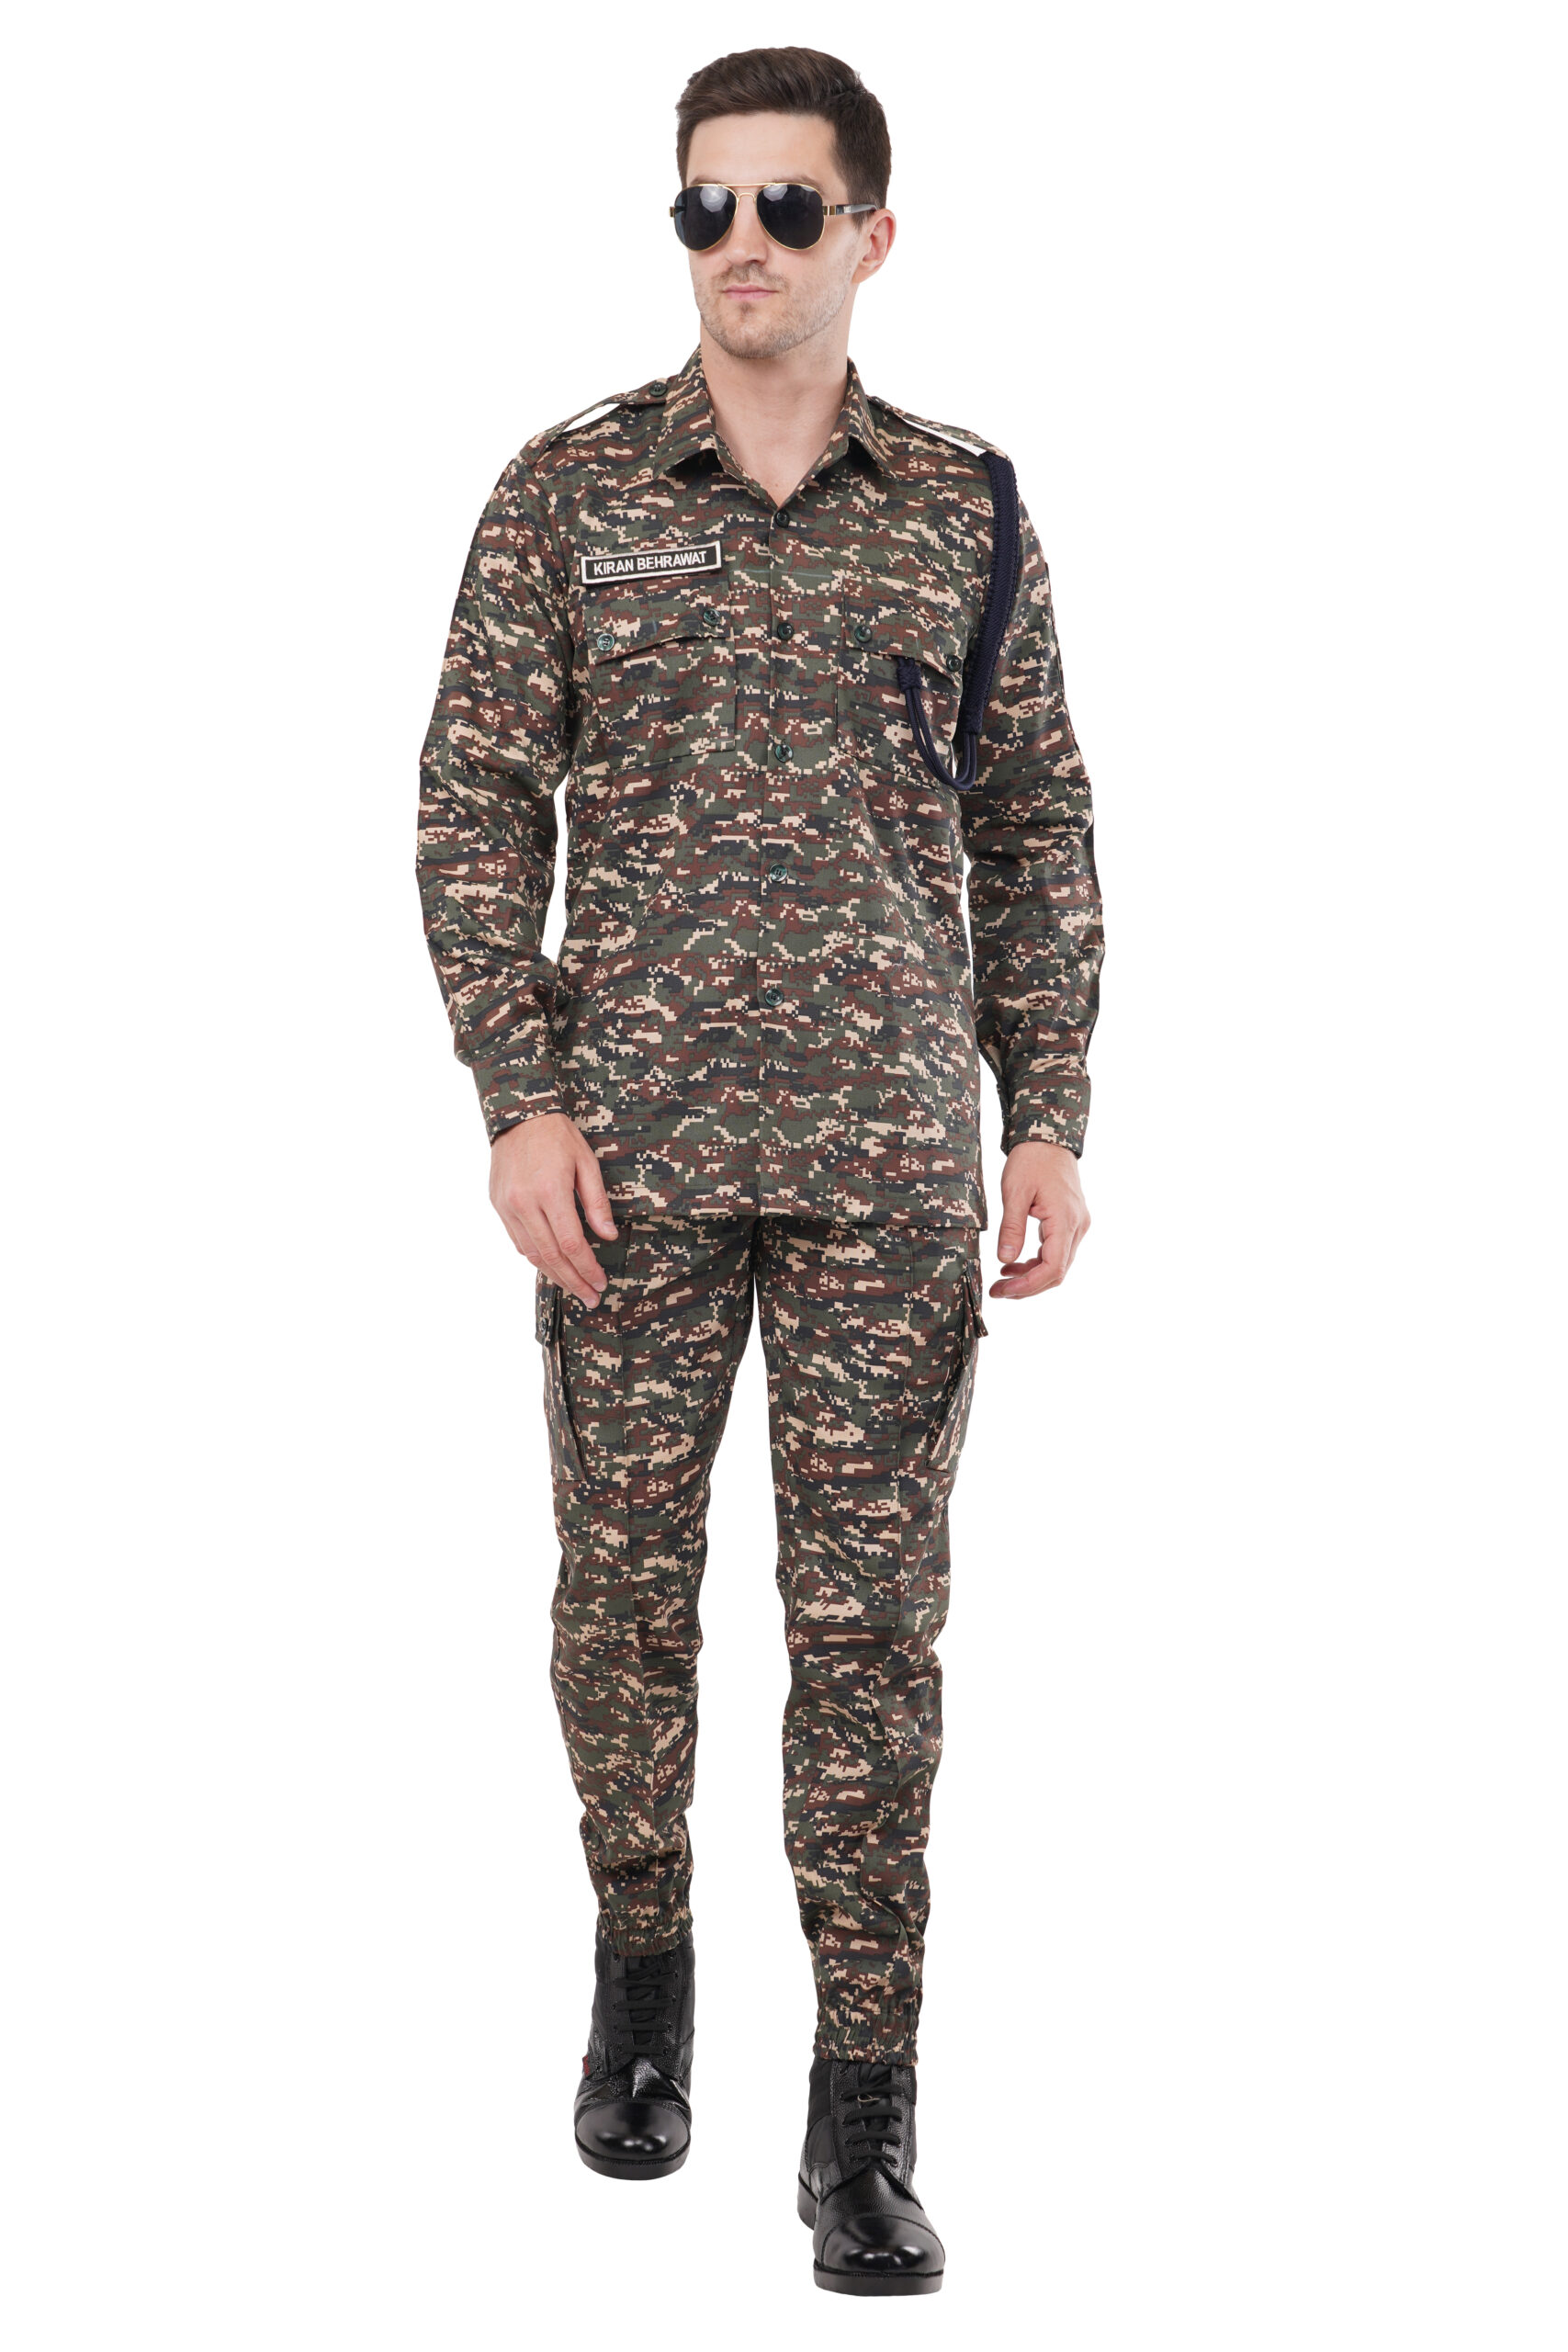 SSB New Pattern Combat Uniform